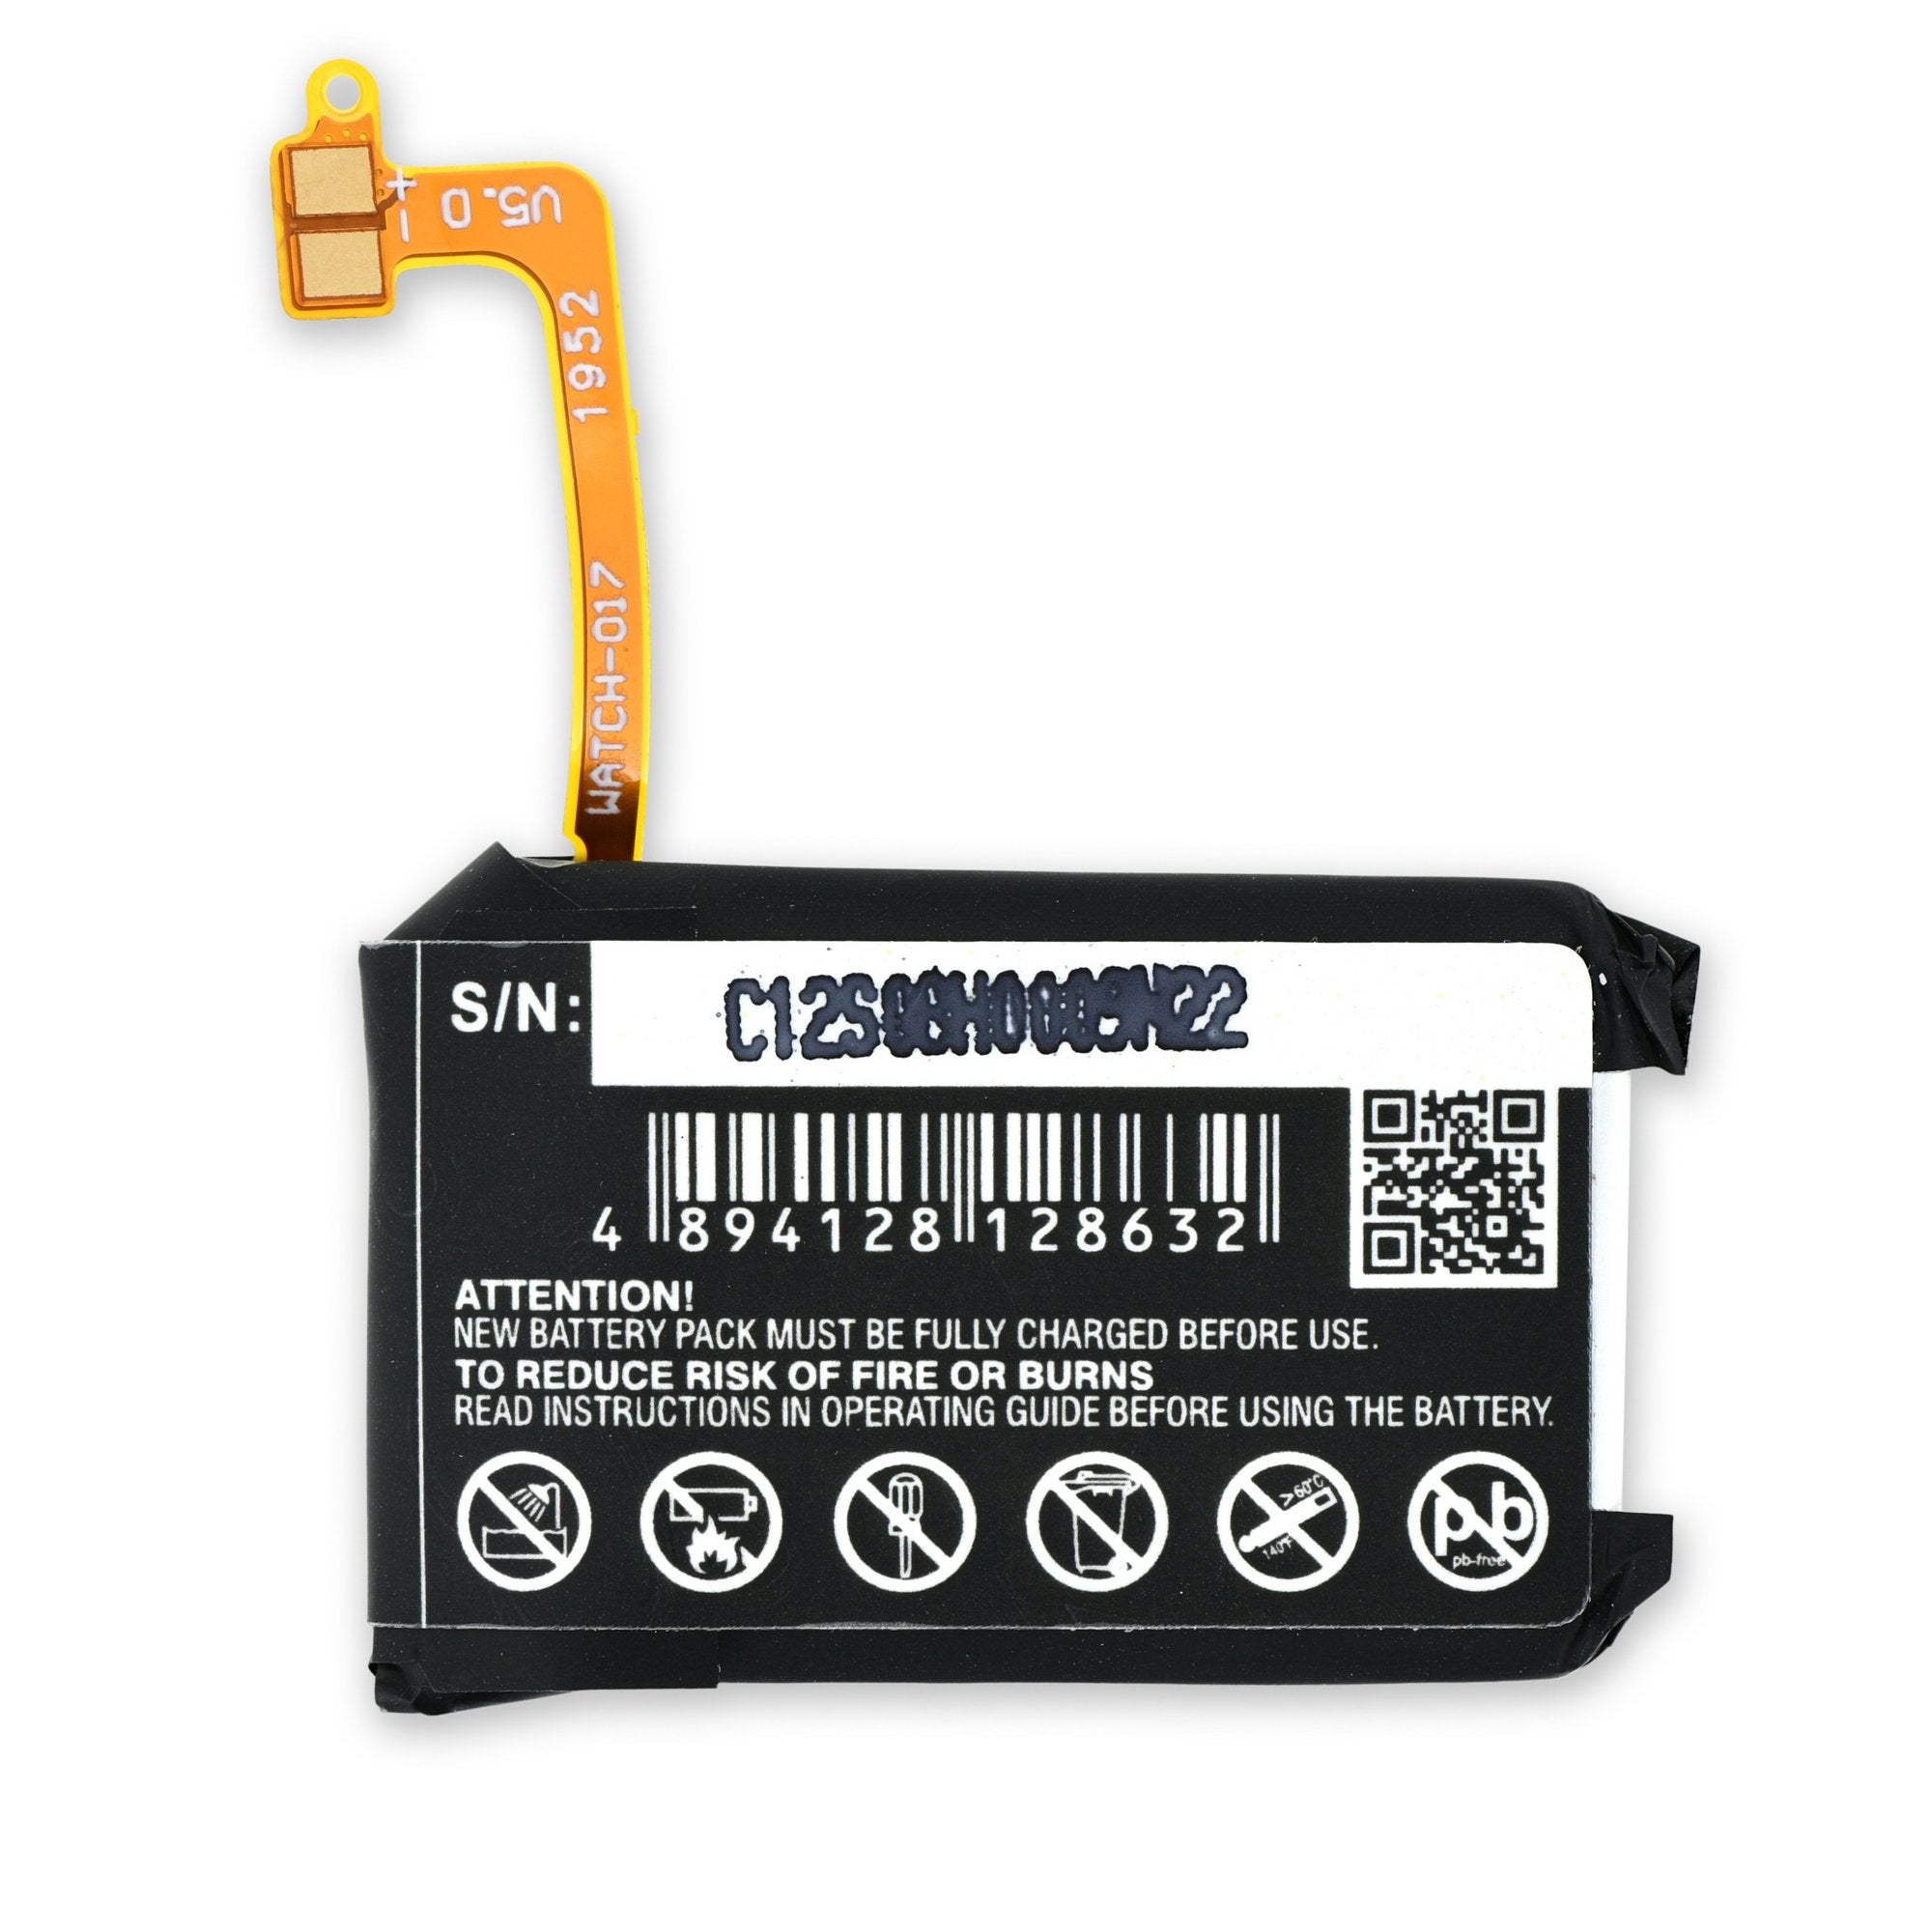 Samsung Gear S2 3G Battery New